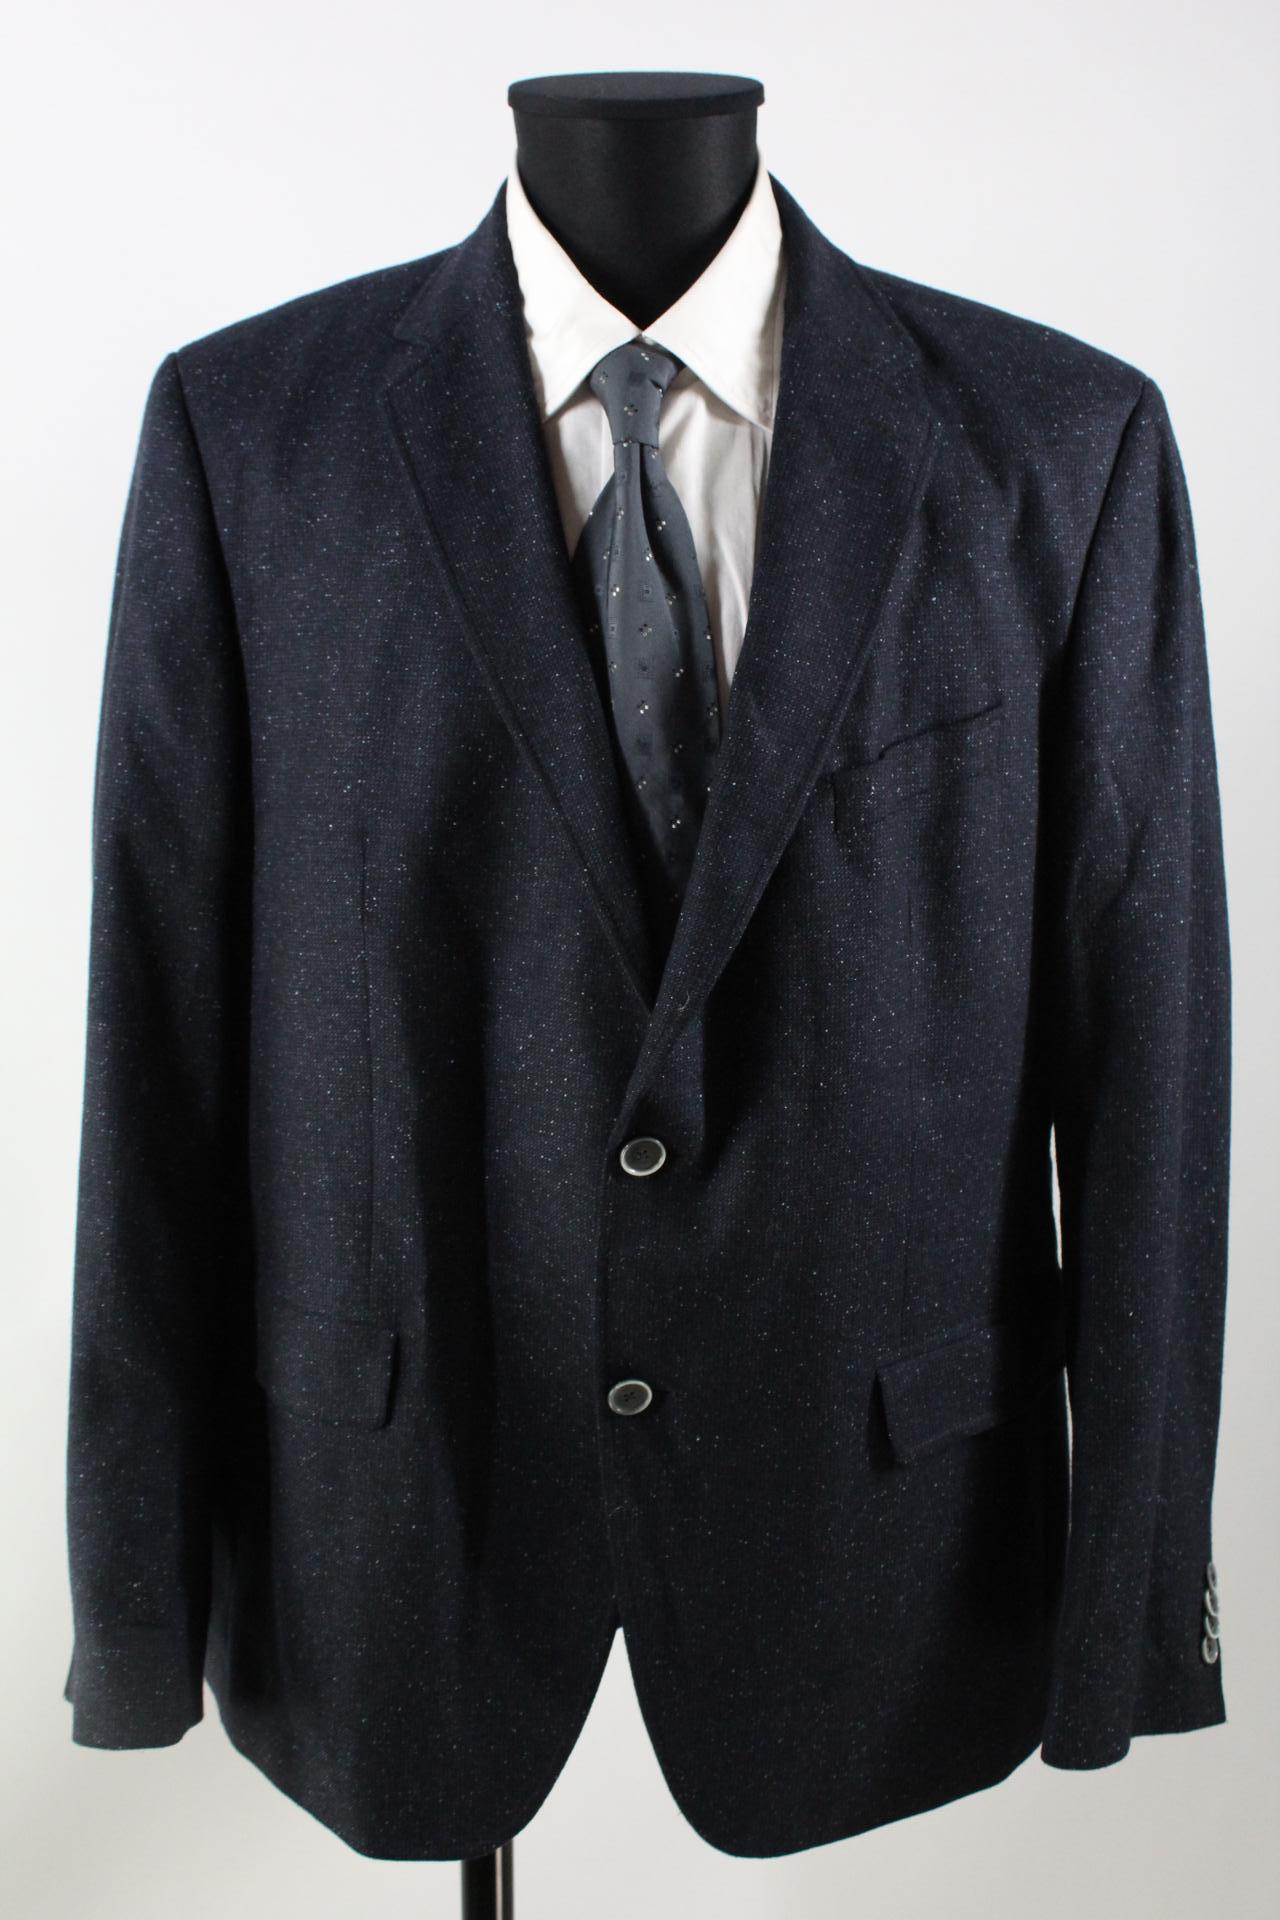 Pierre Cardin Tweed-Sakko schwarz, blau, weiß, gemustert Größe 54